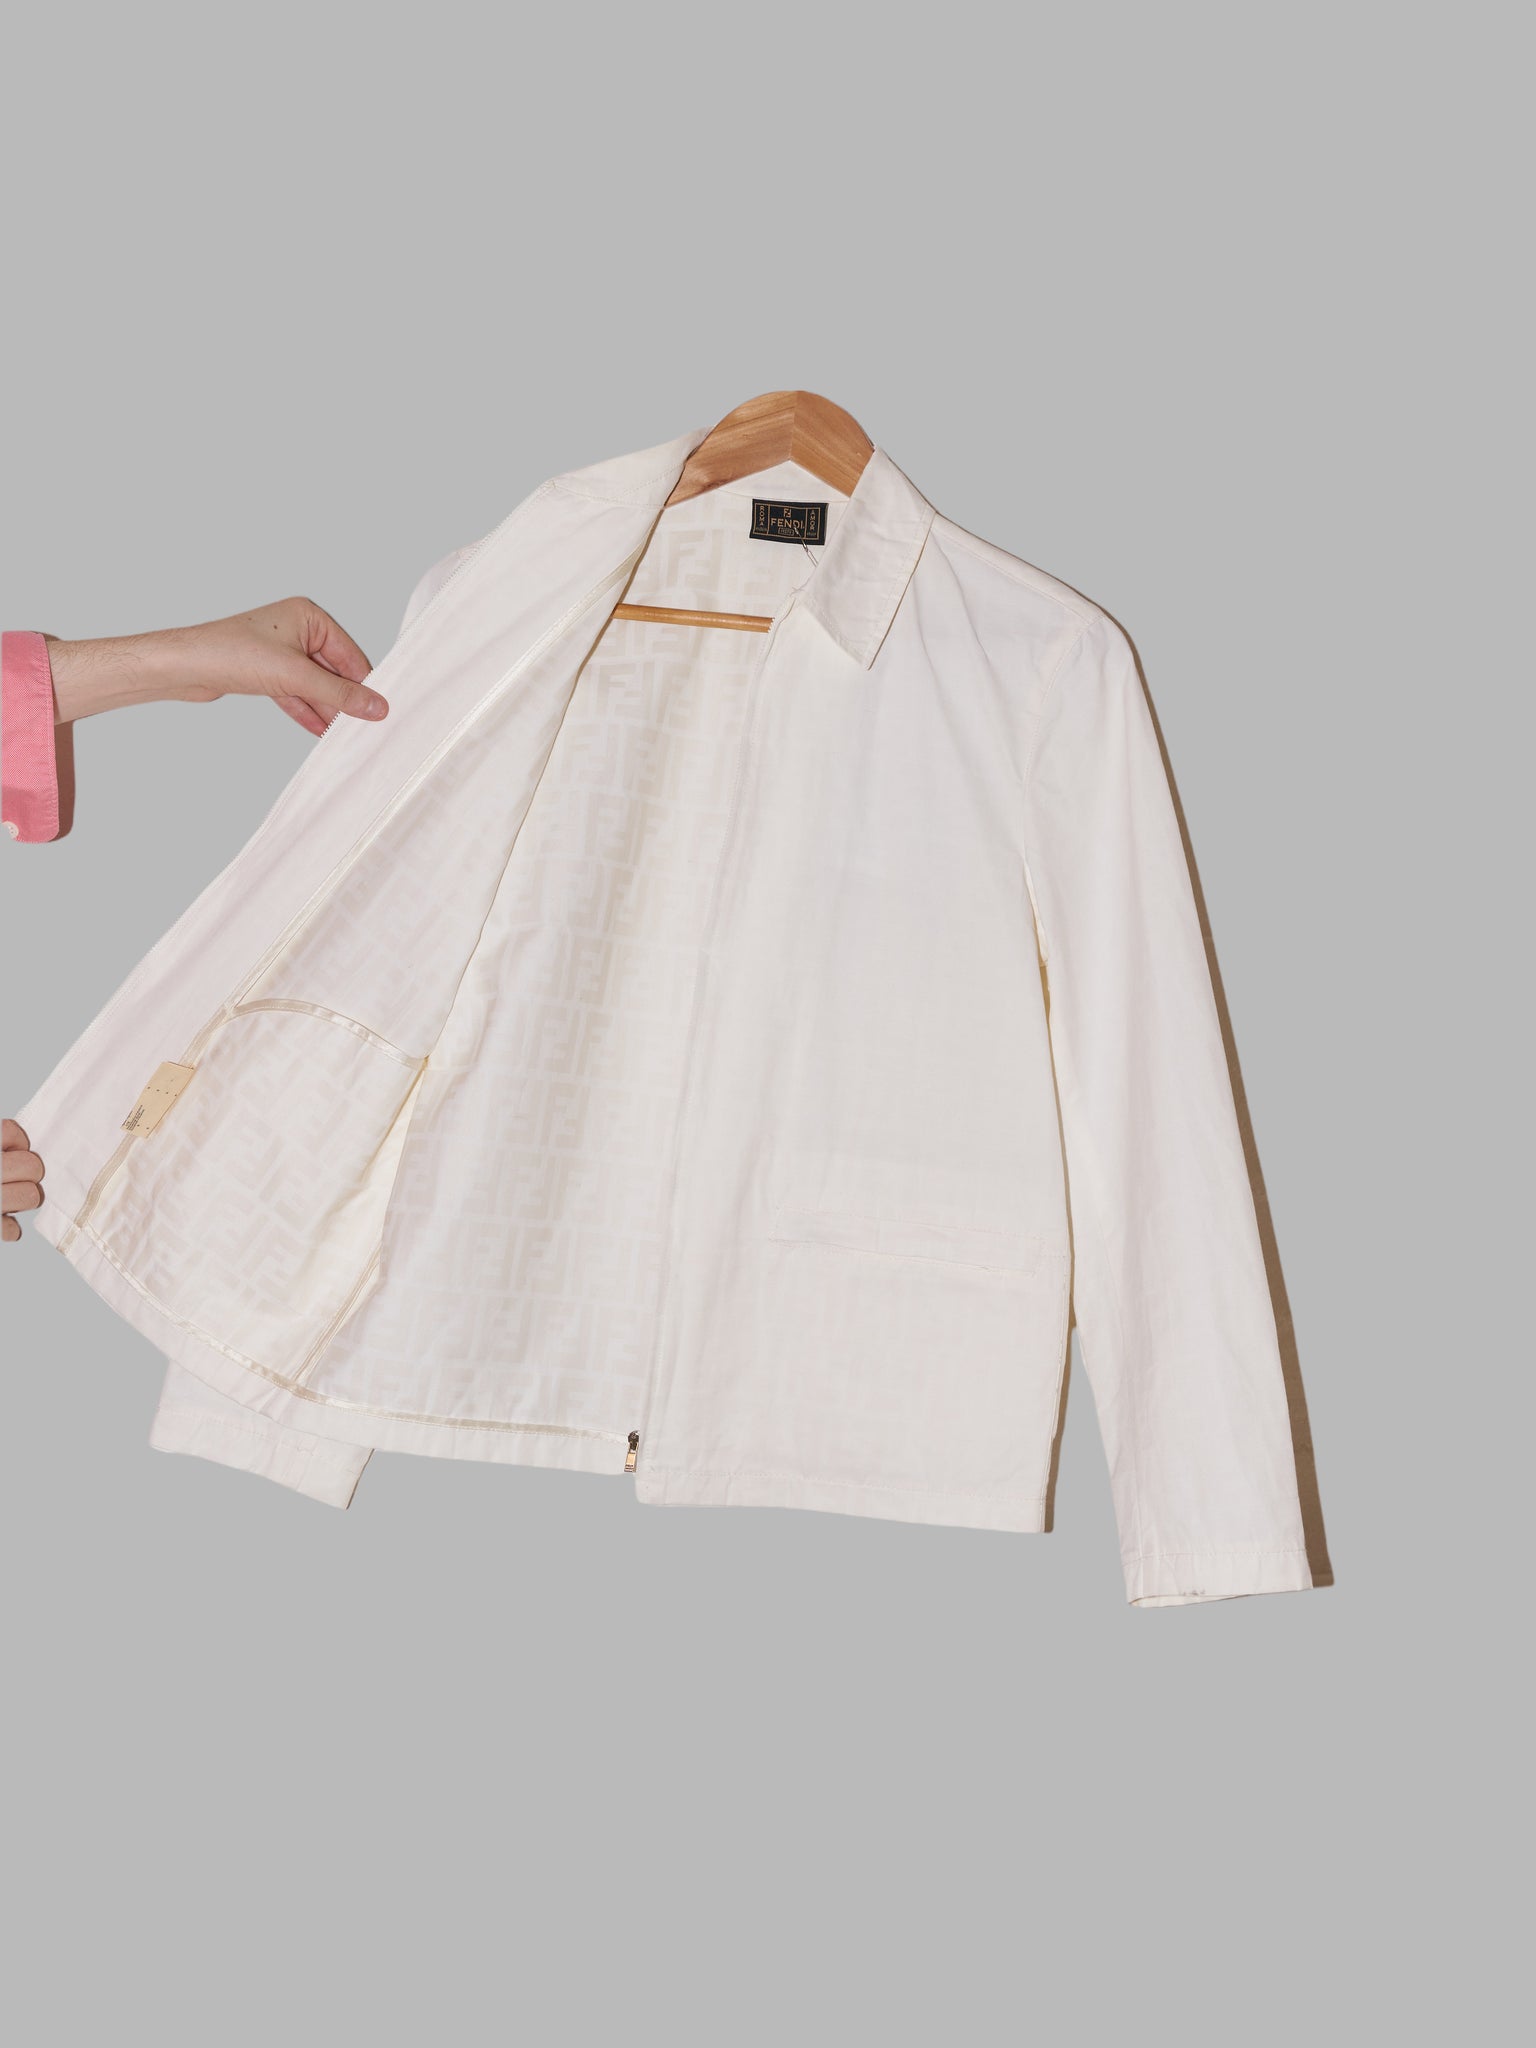 Fendi Jeans 1990s white cotton-nylon zip jacket with logo print on inside